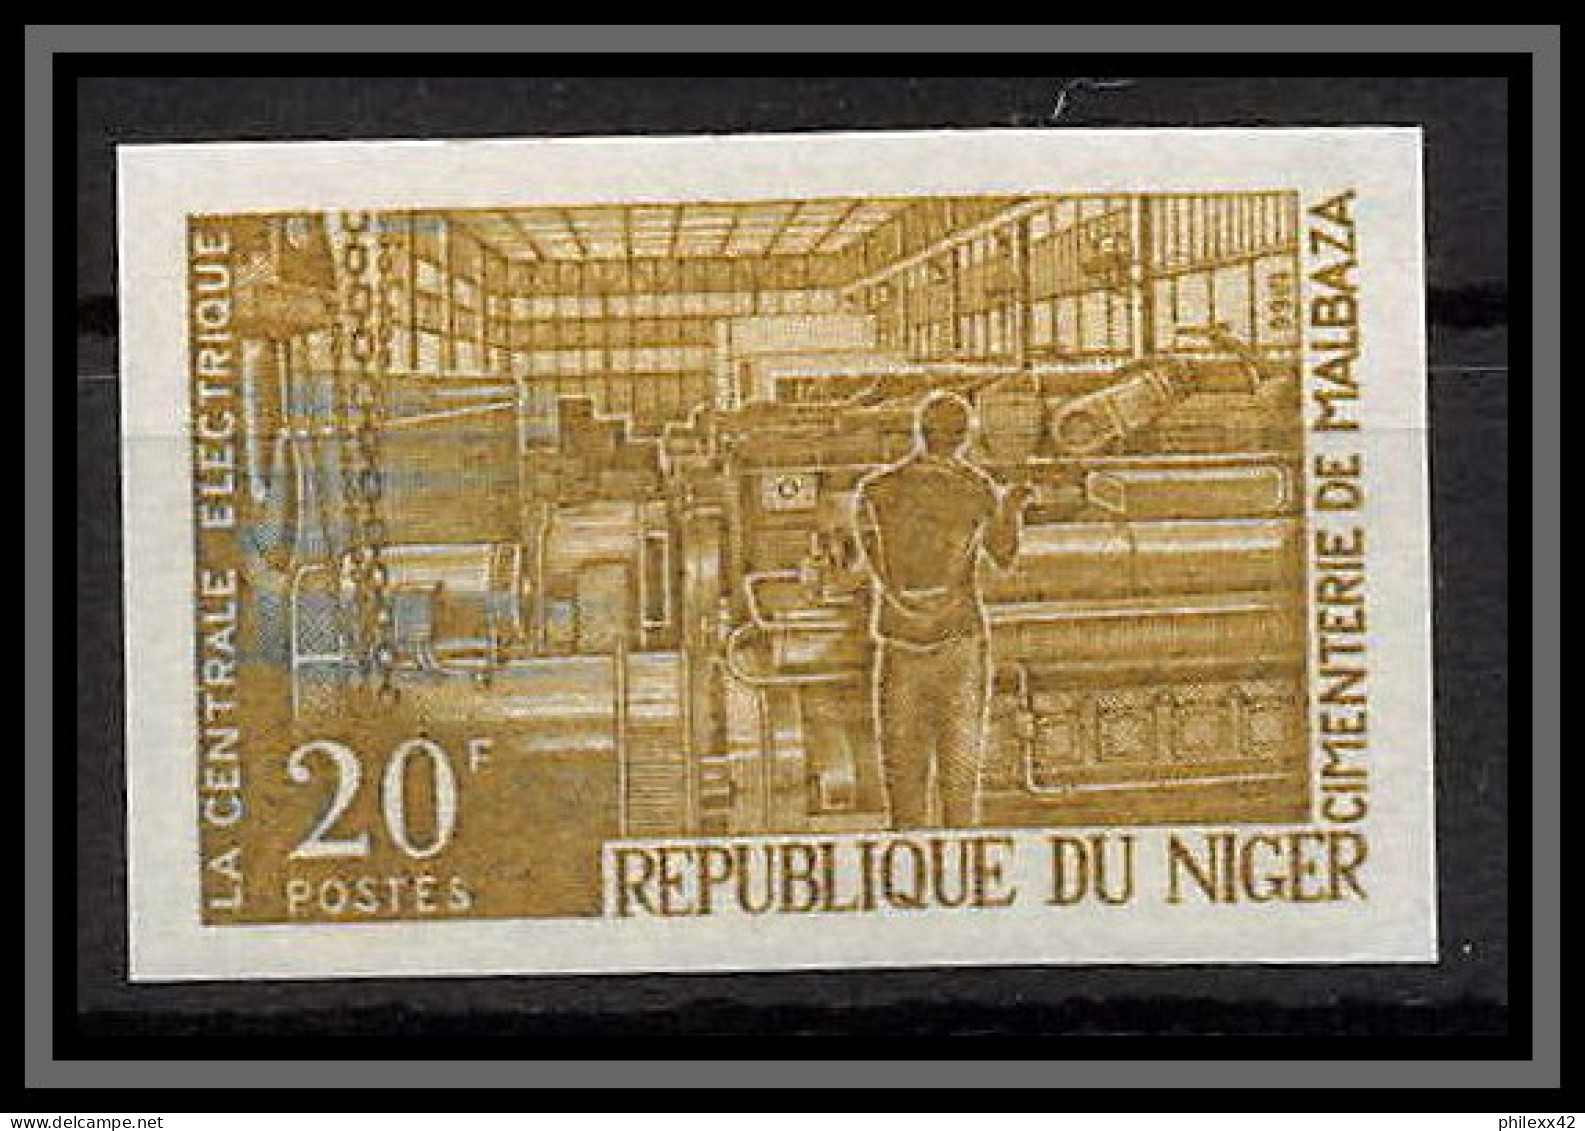 93369 Niger N°187 Centrale Electrique 1966 Electric Power Station Essai Proof Non Dentelé Imperf ** MNH - Elettricità